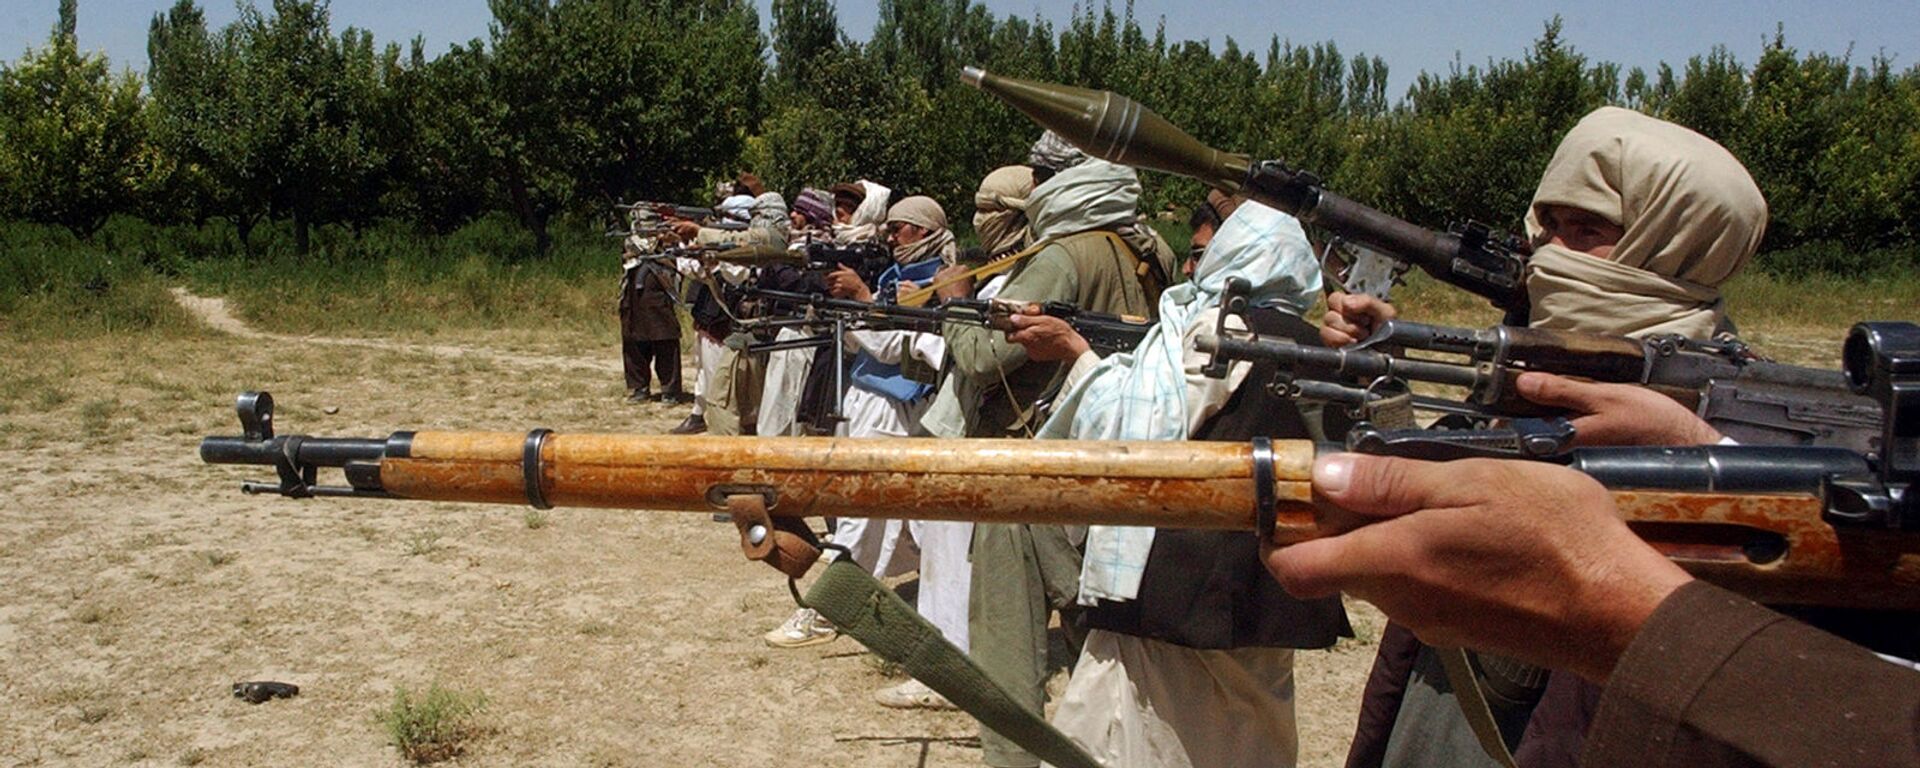 Боевики Талибана тренируются с оружием в Афганистане - Sputnik Армения, 1920, 08.09.2021